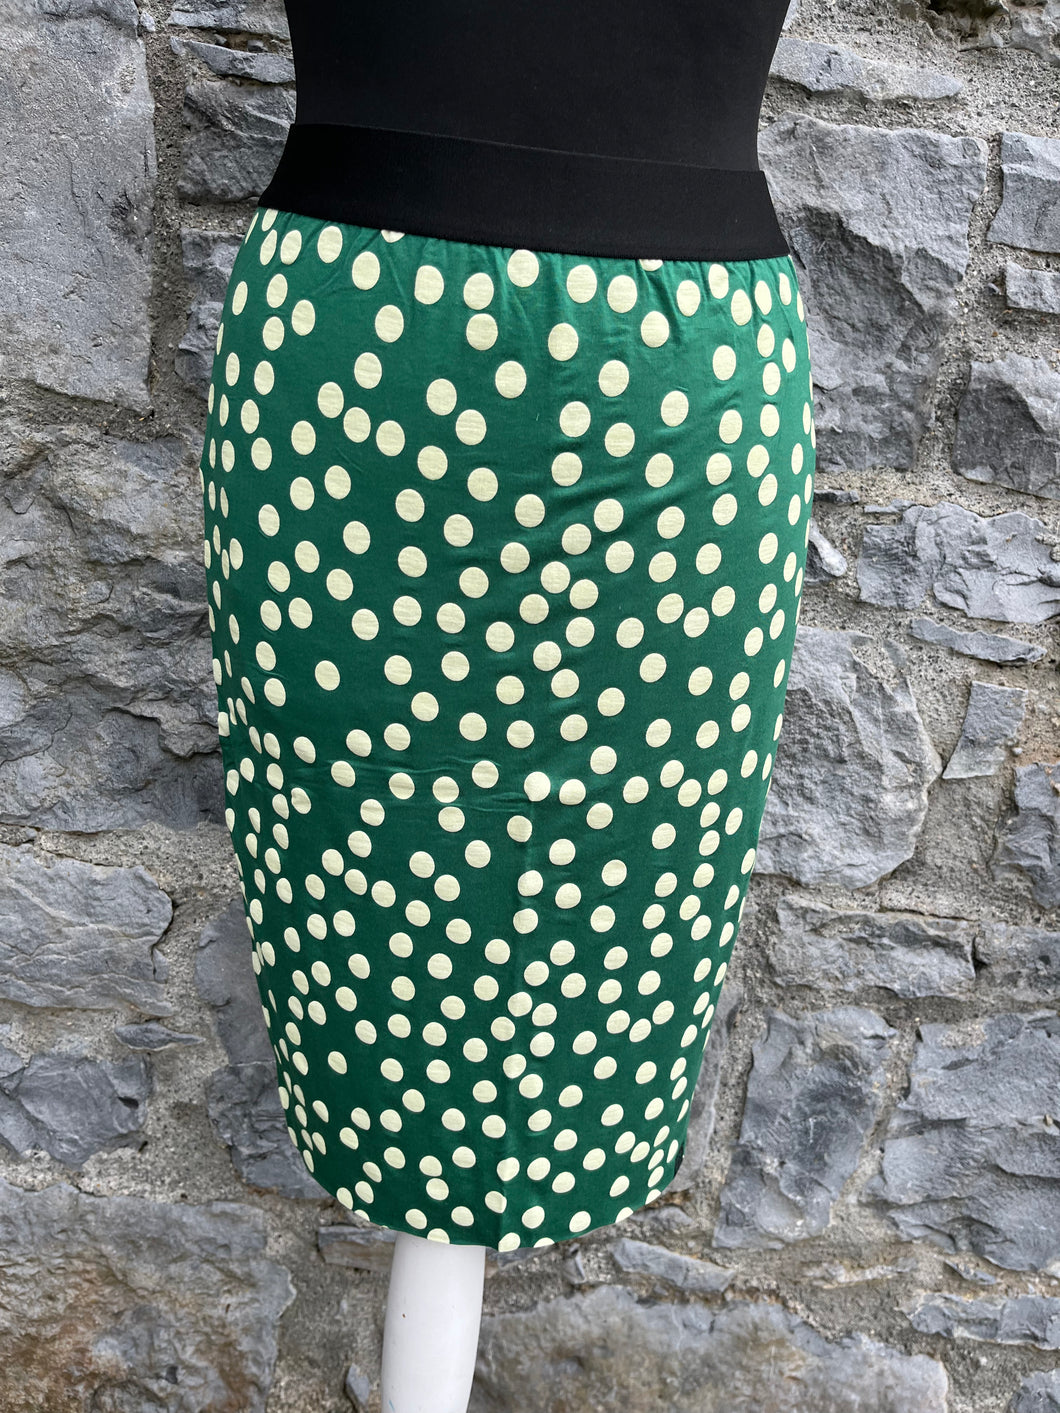 Green spotty skirt uk 8-10